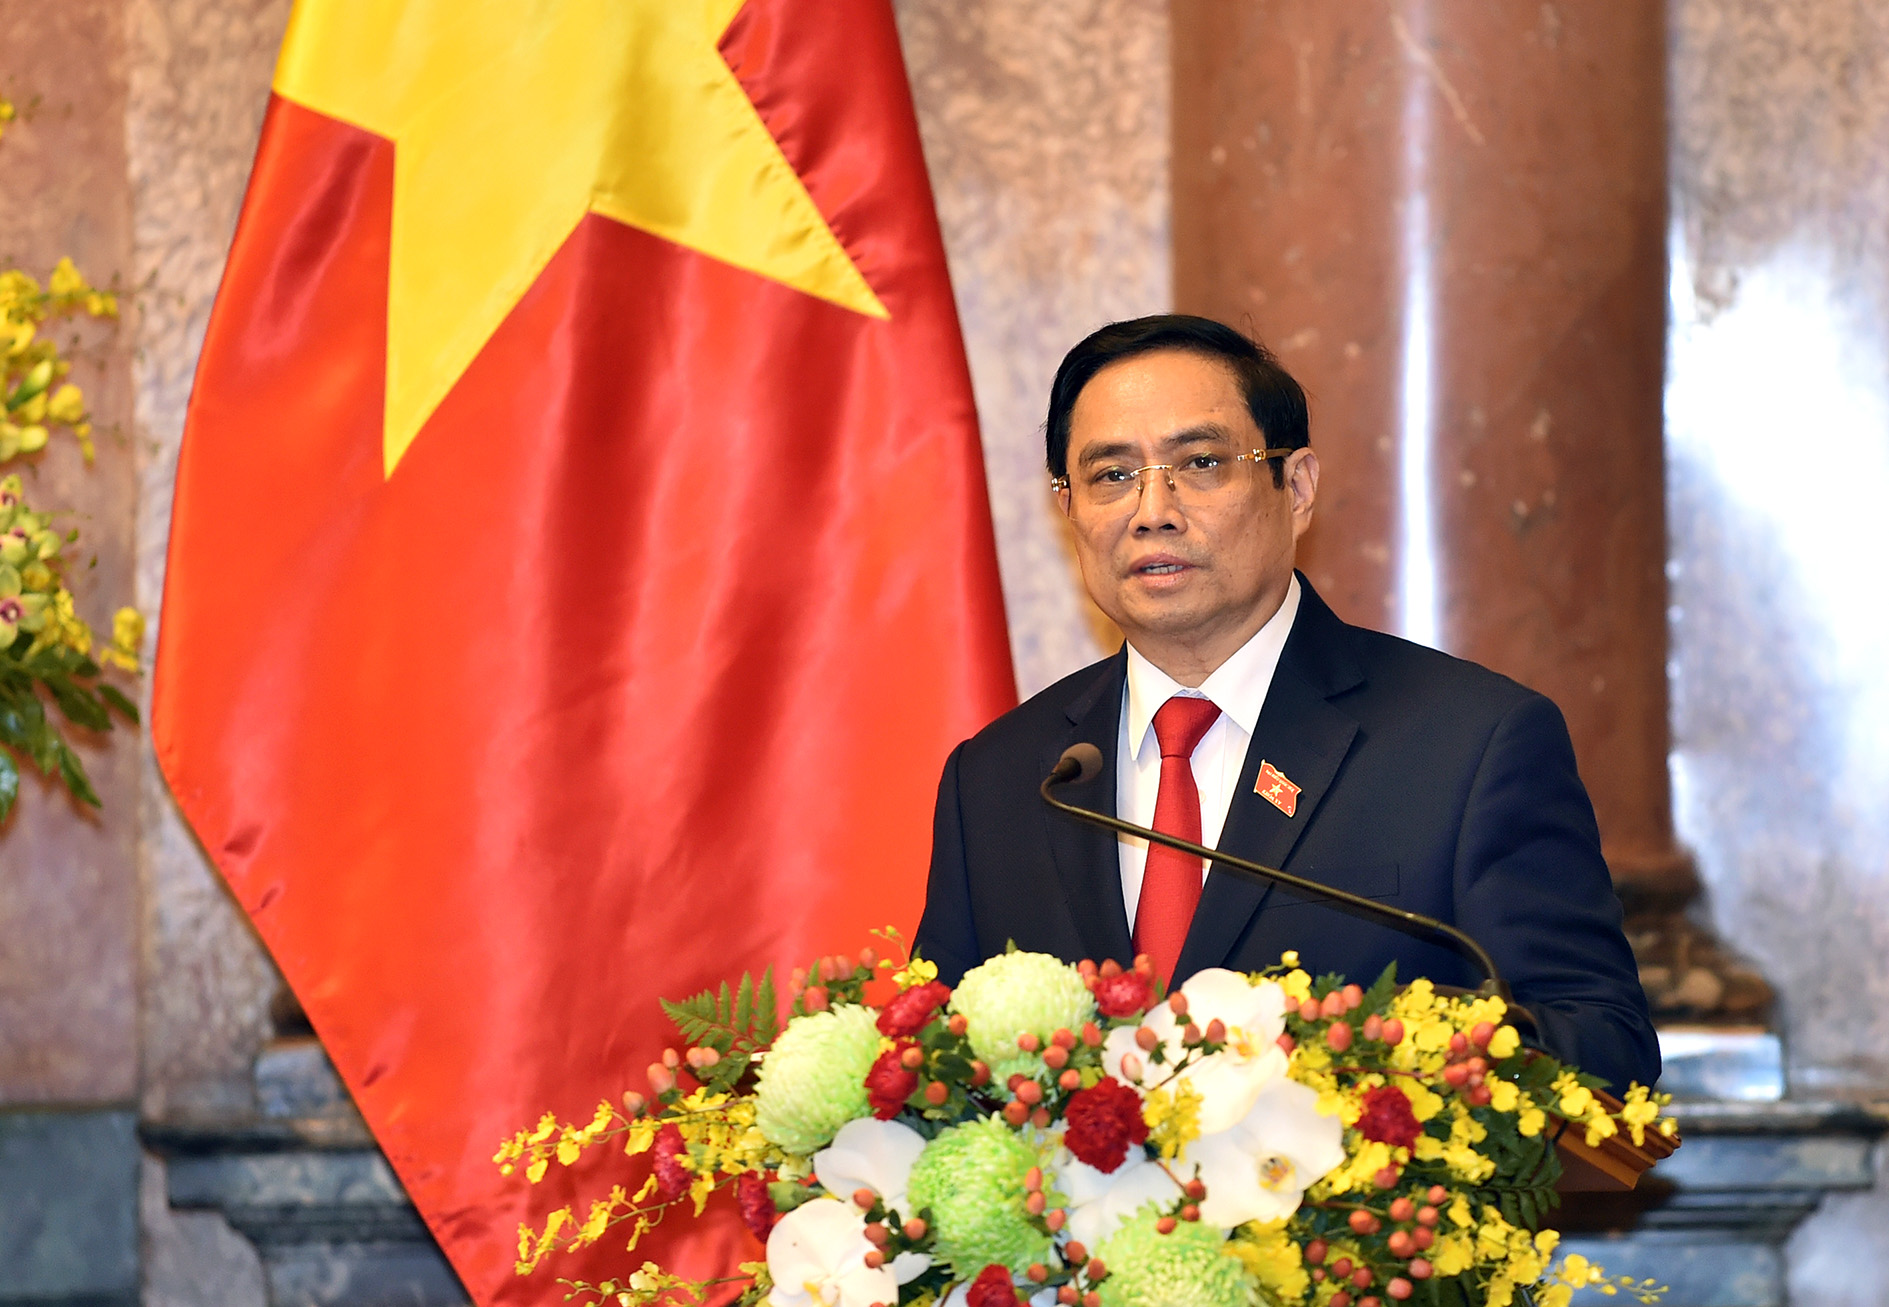 Thủ tướng Phạm Minh Chính: “Chính phủ nguyện cống hiến hết sức mình phụng sự Tổ quốc, phục vụ Nhân dân